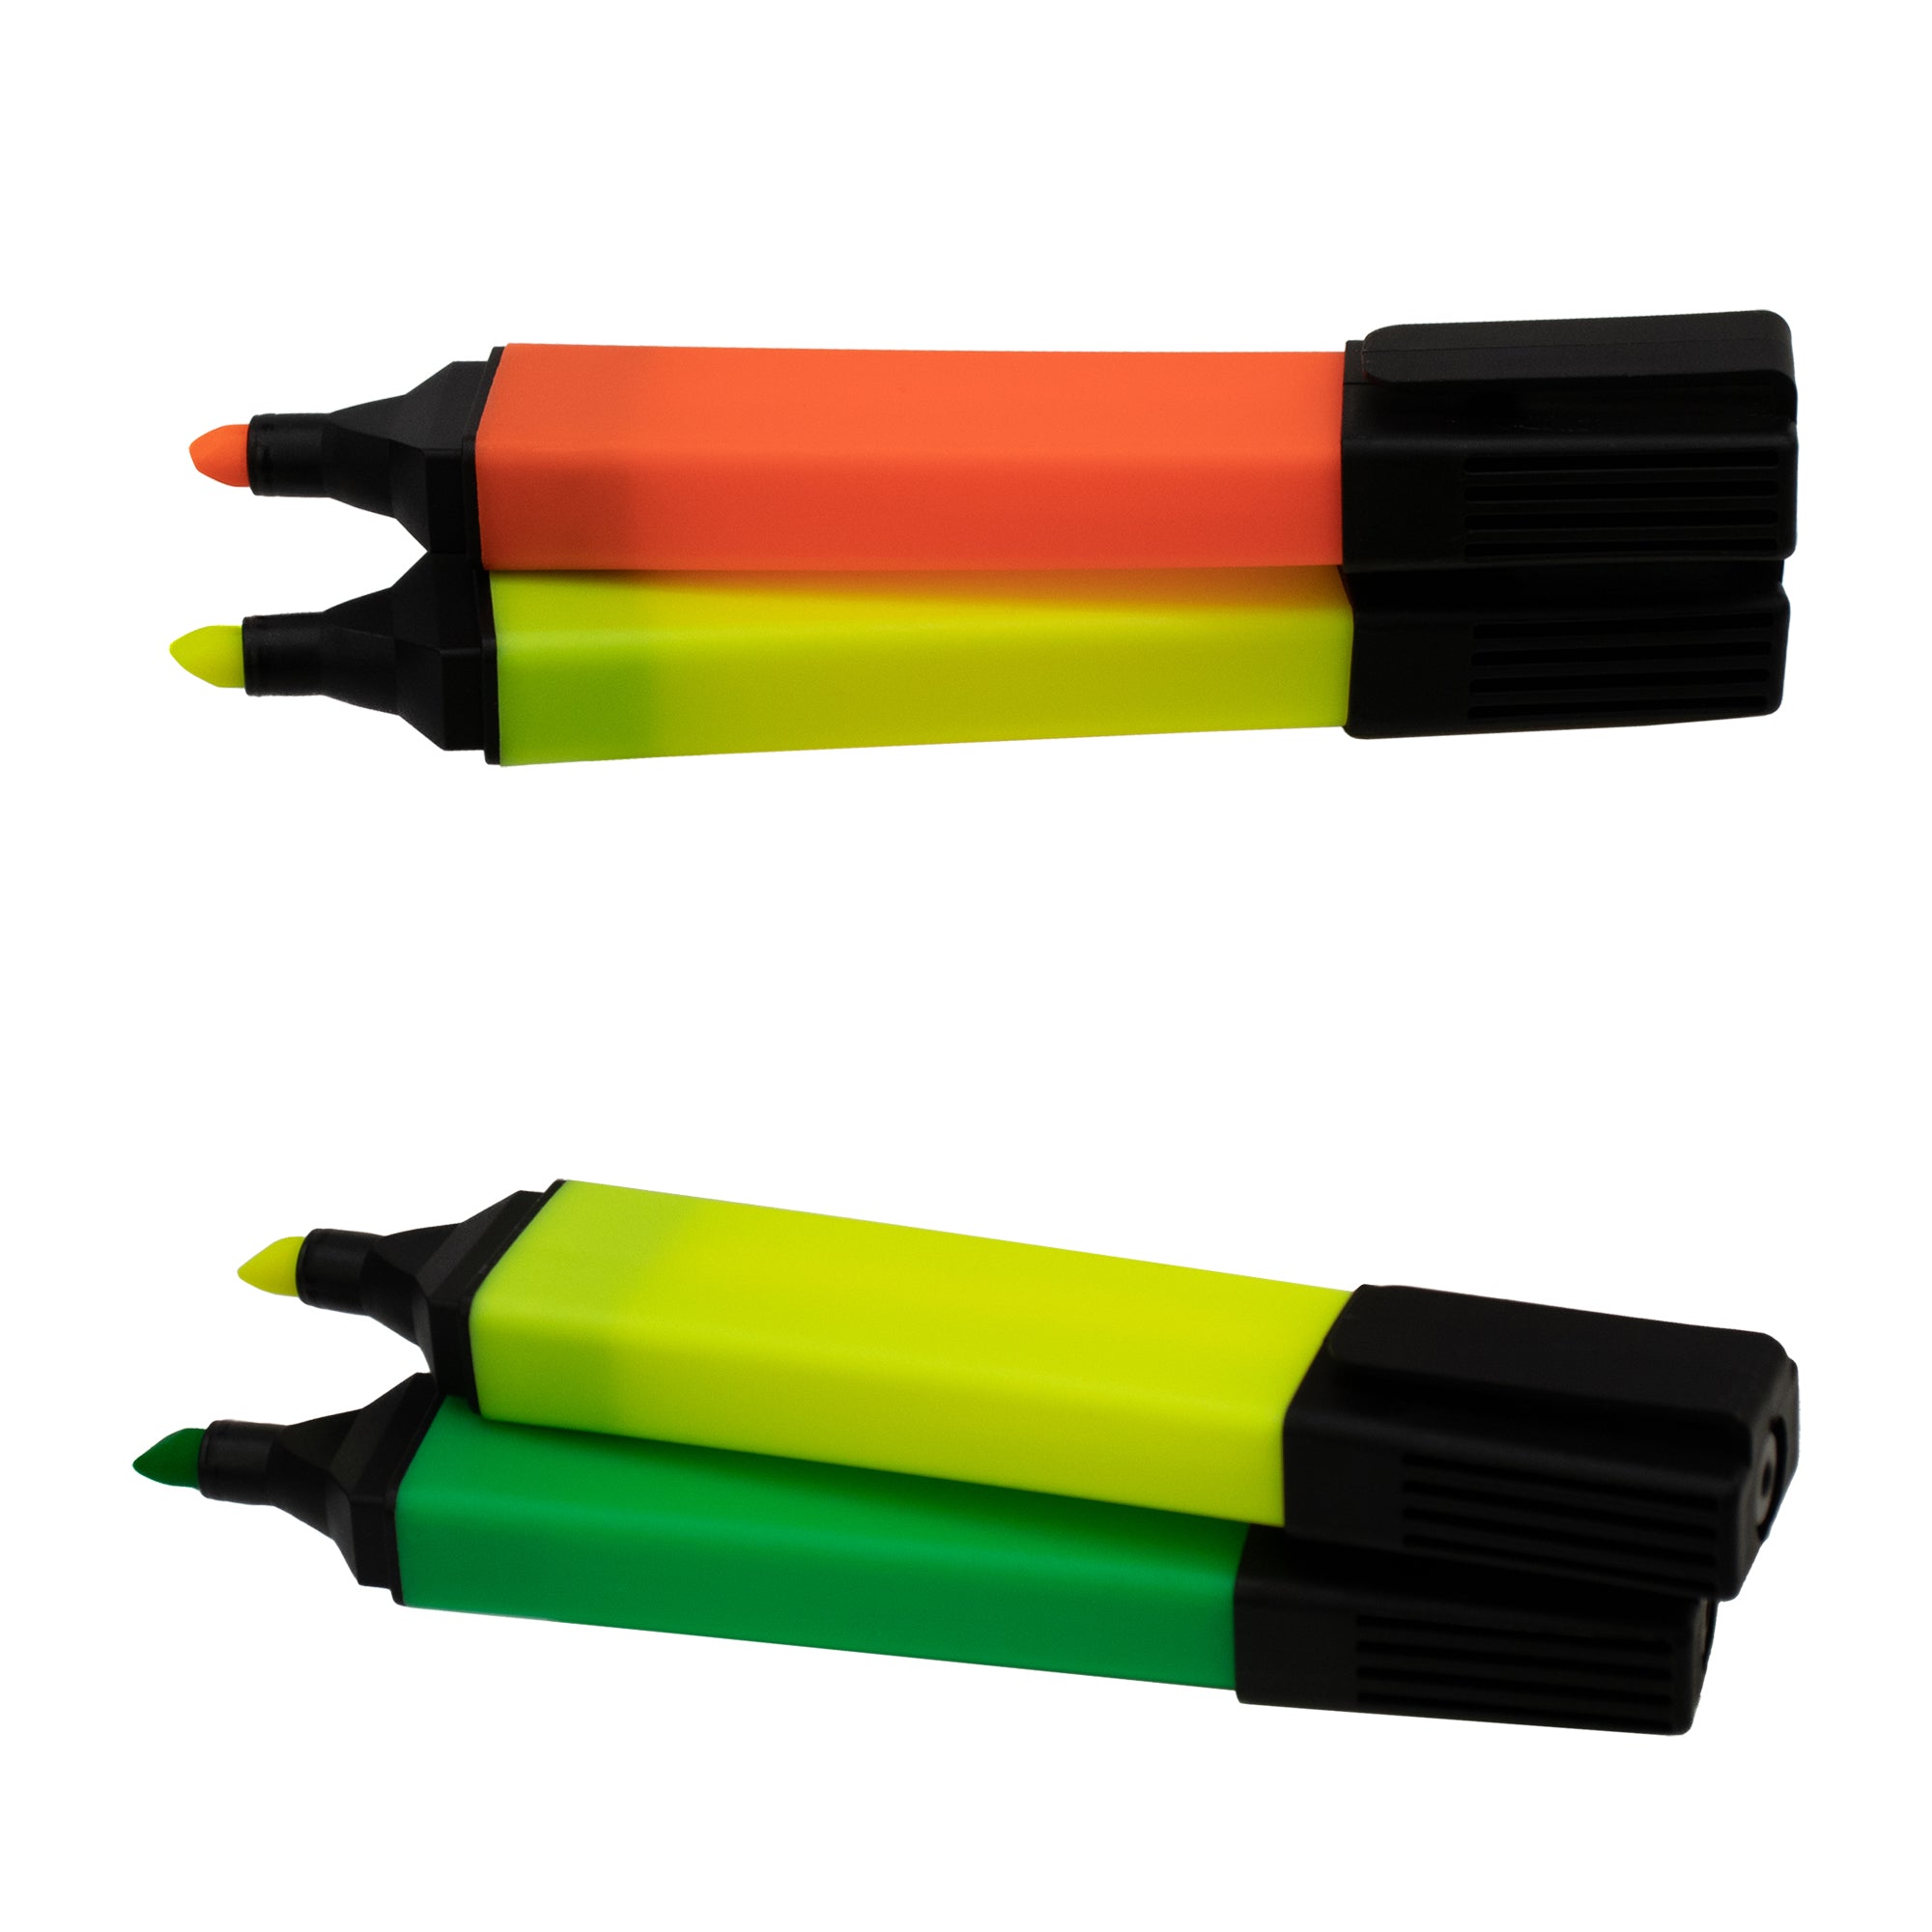 Highlighter Pens 4 Pack